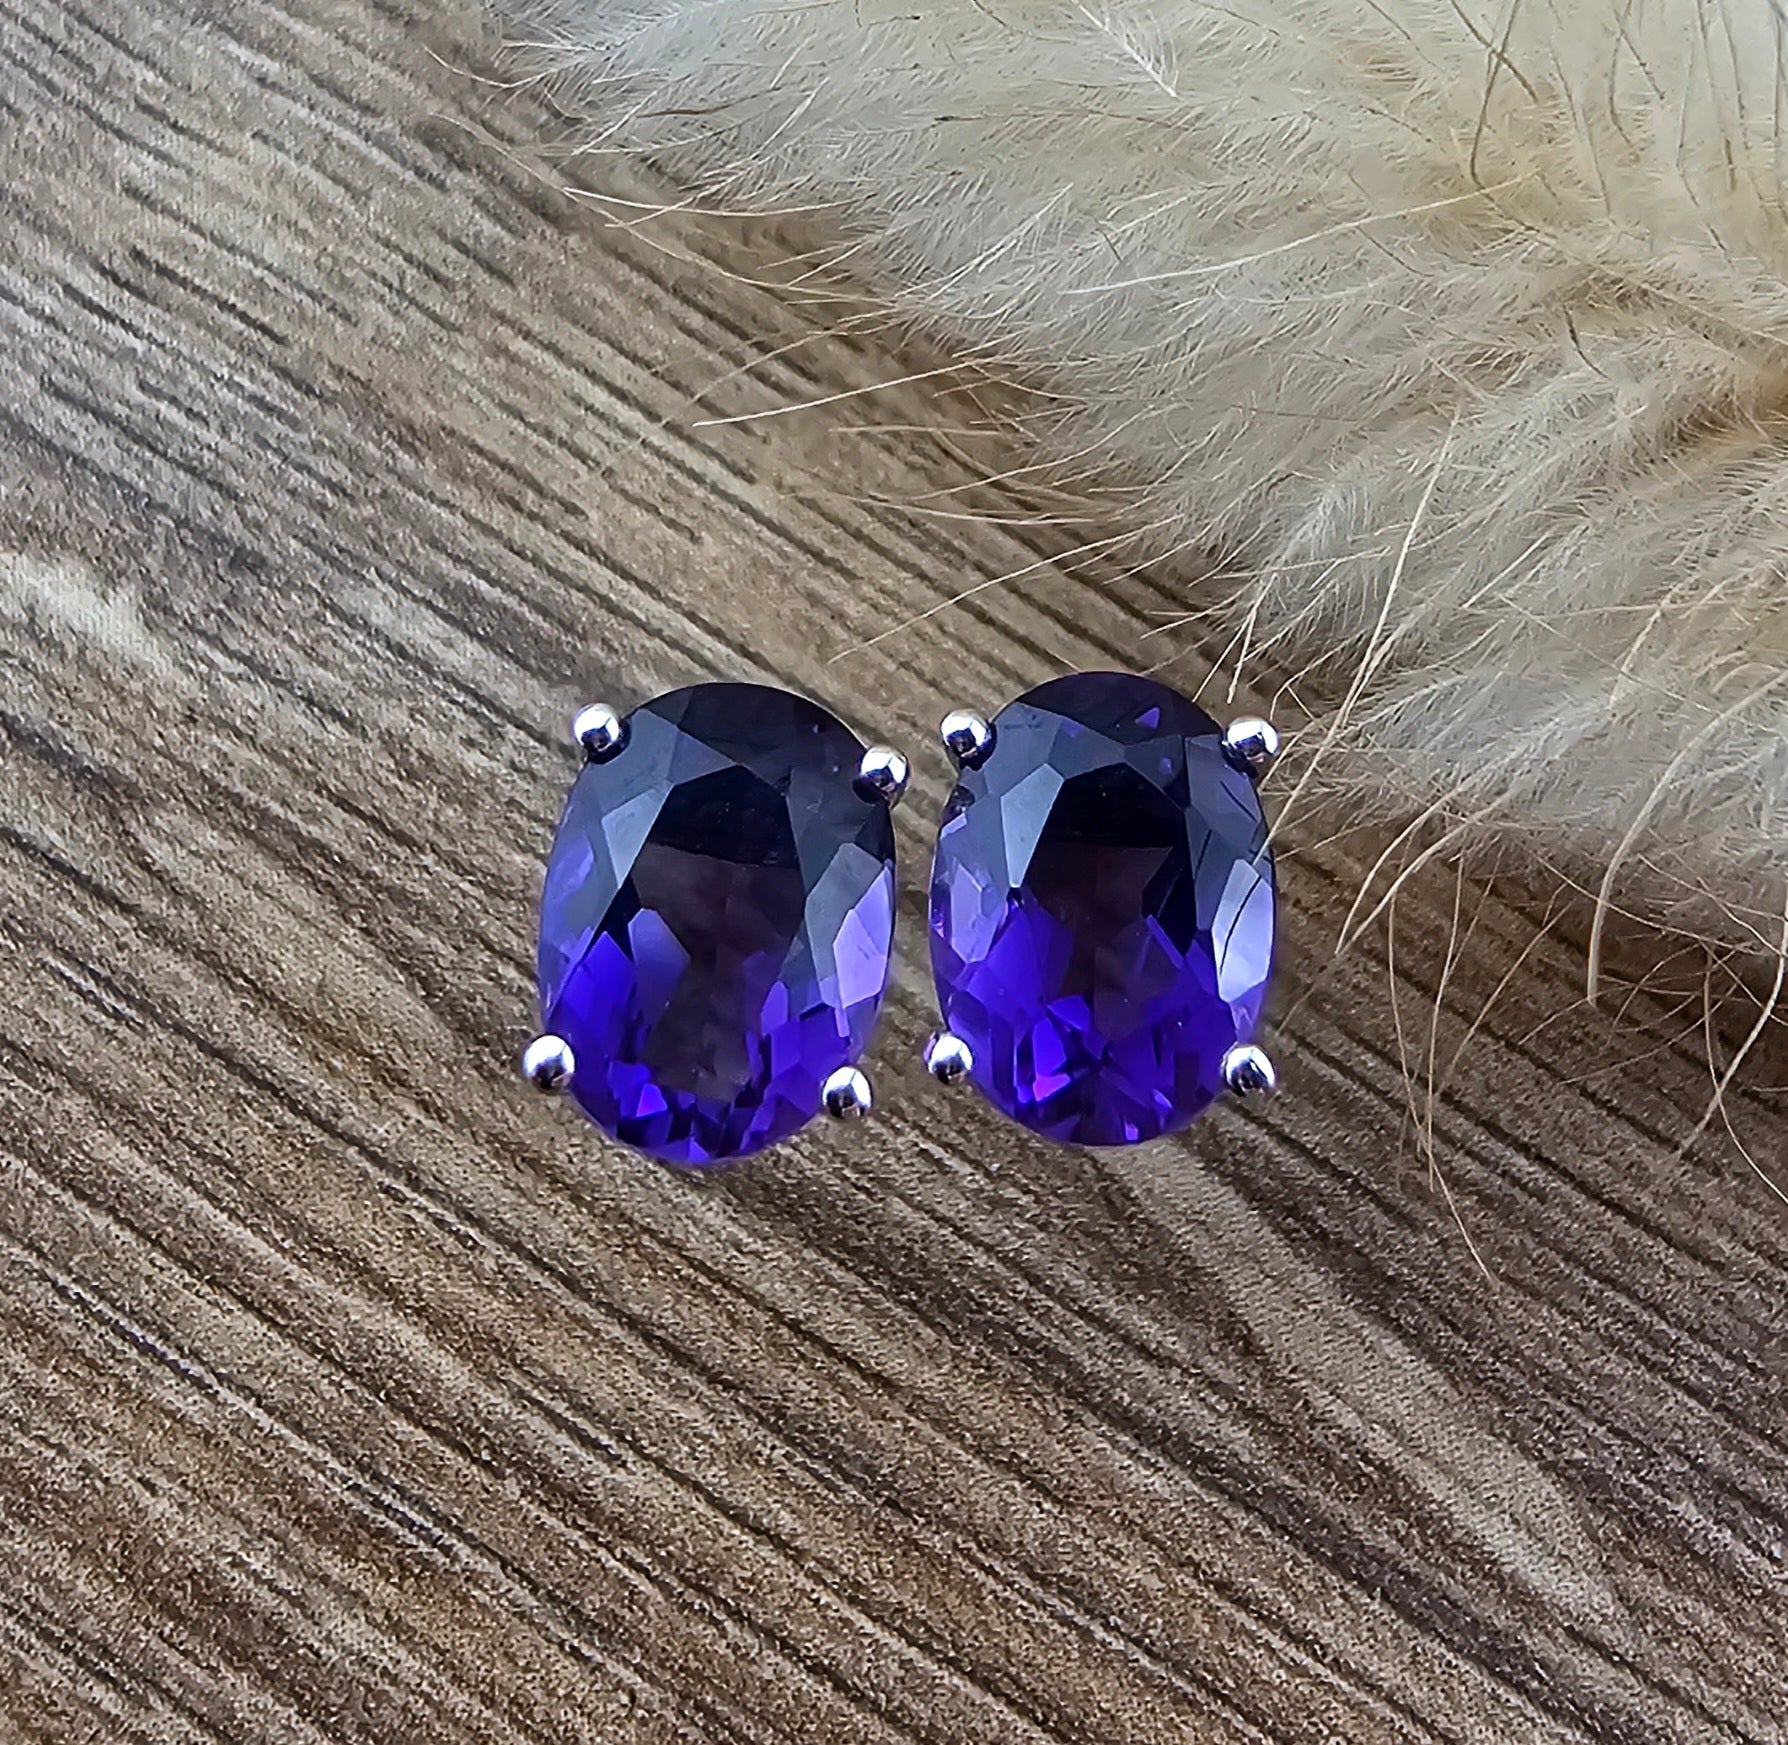 Oval amethyst stud earrings